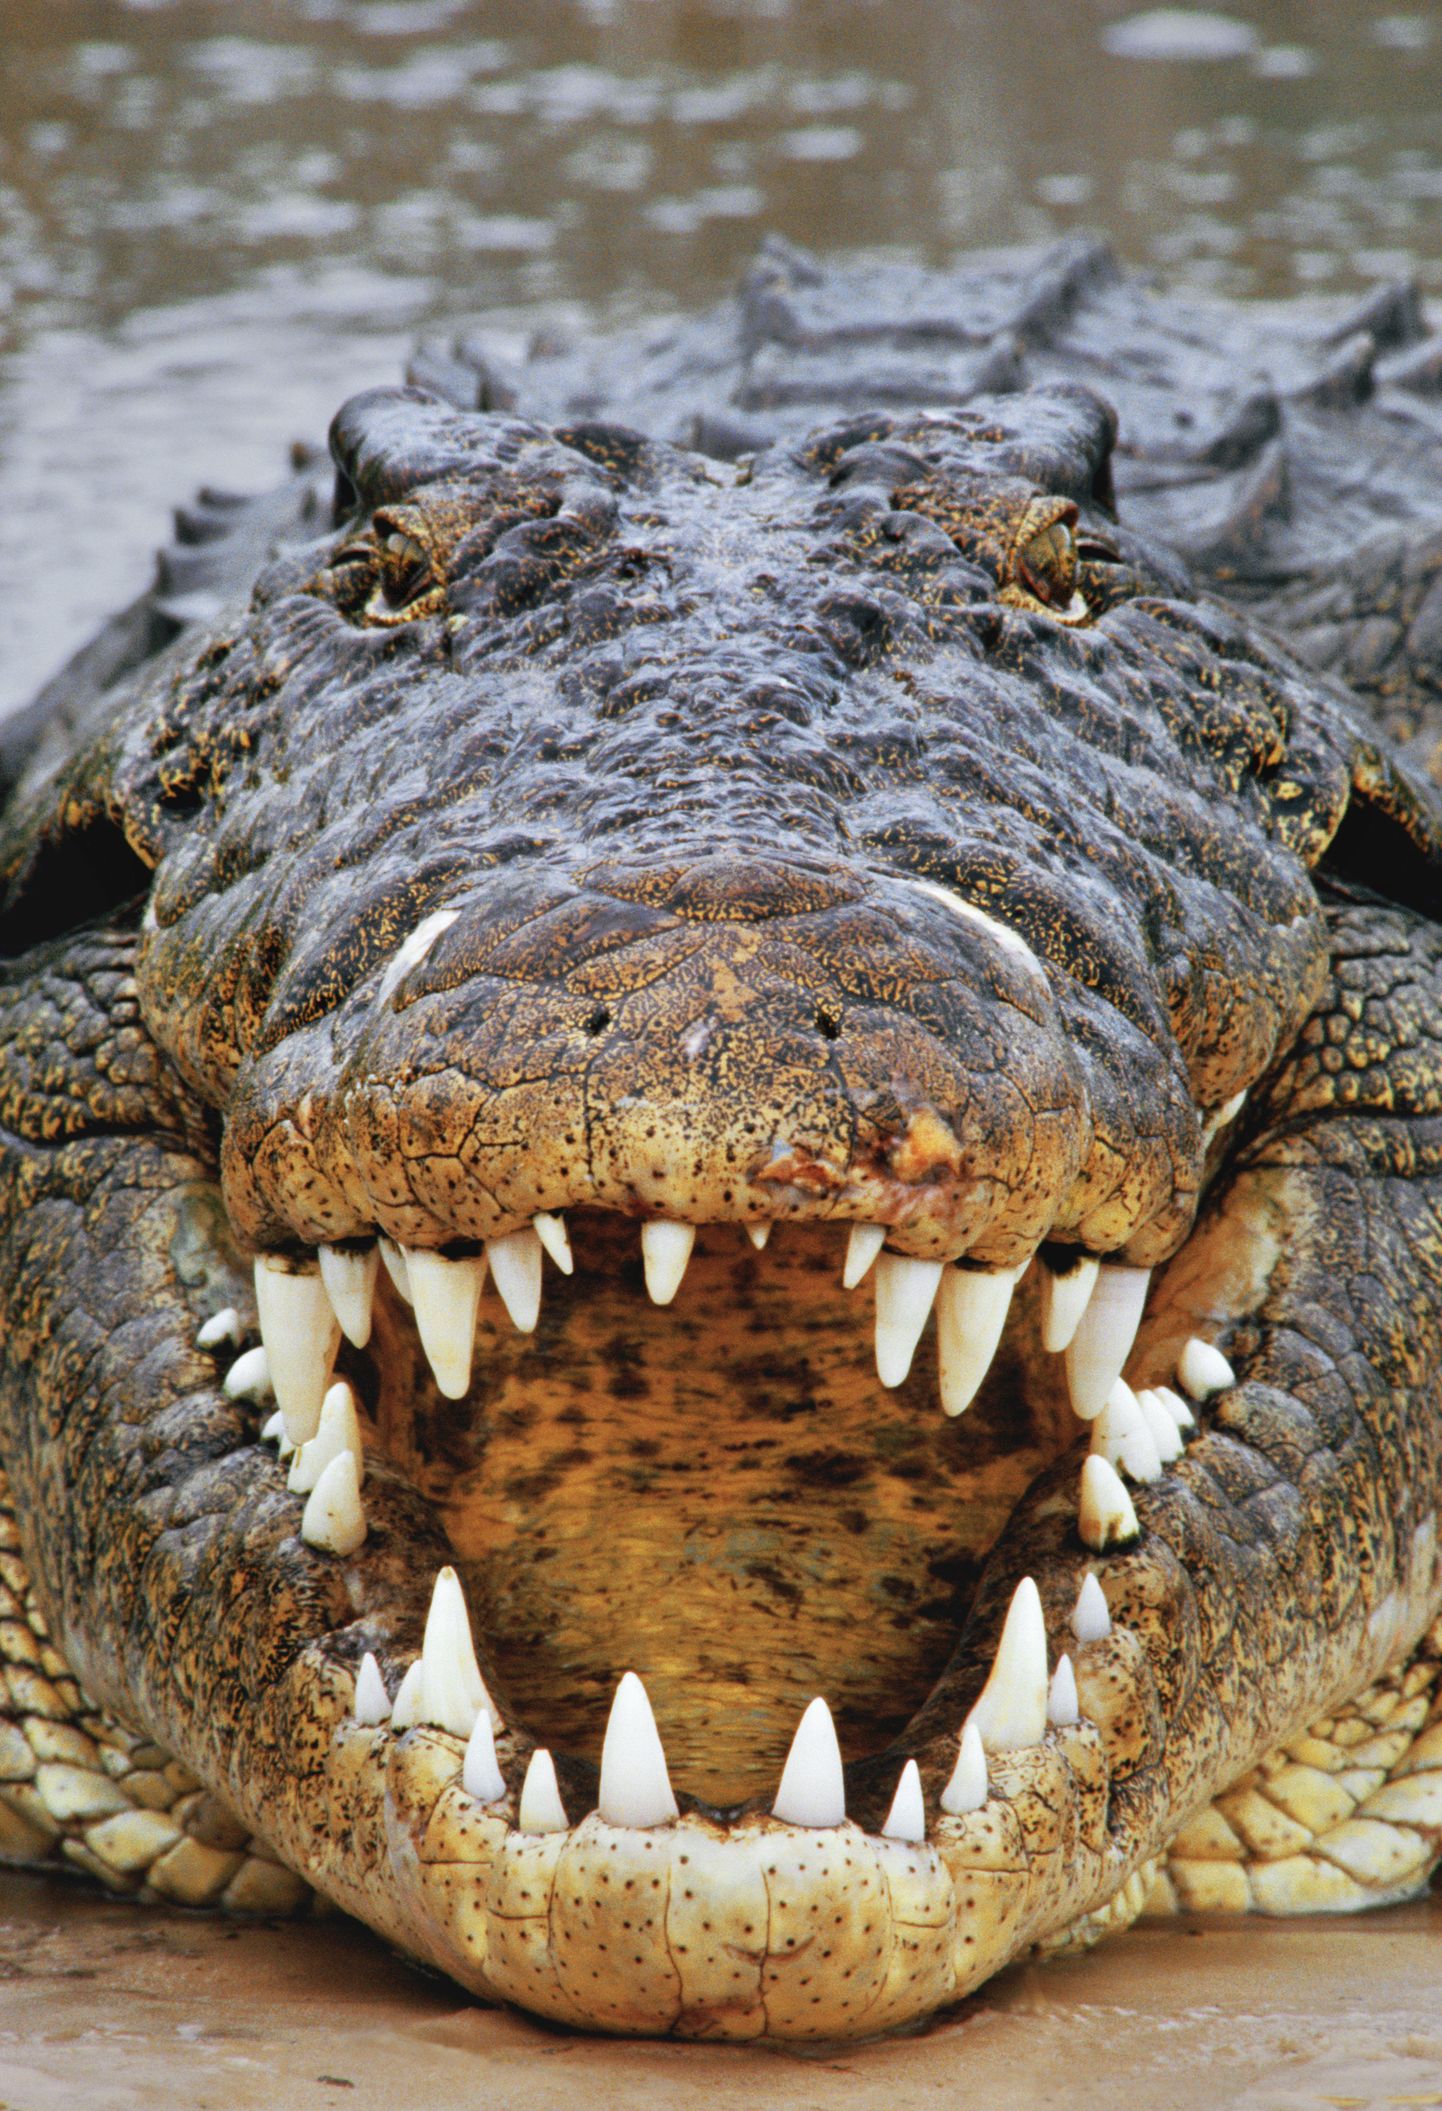 Niiluse krokodill Botswanas